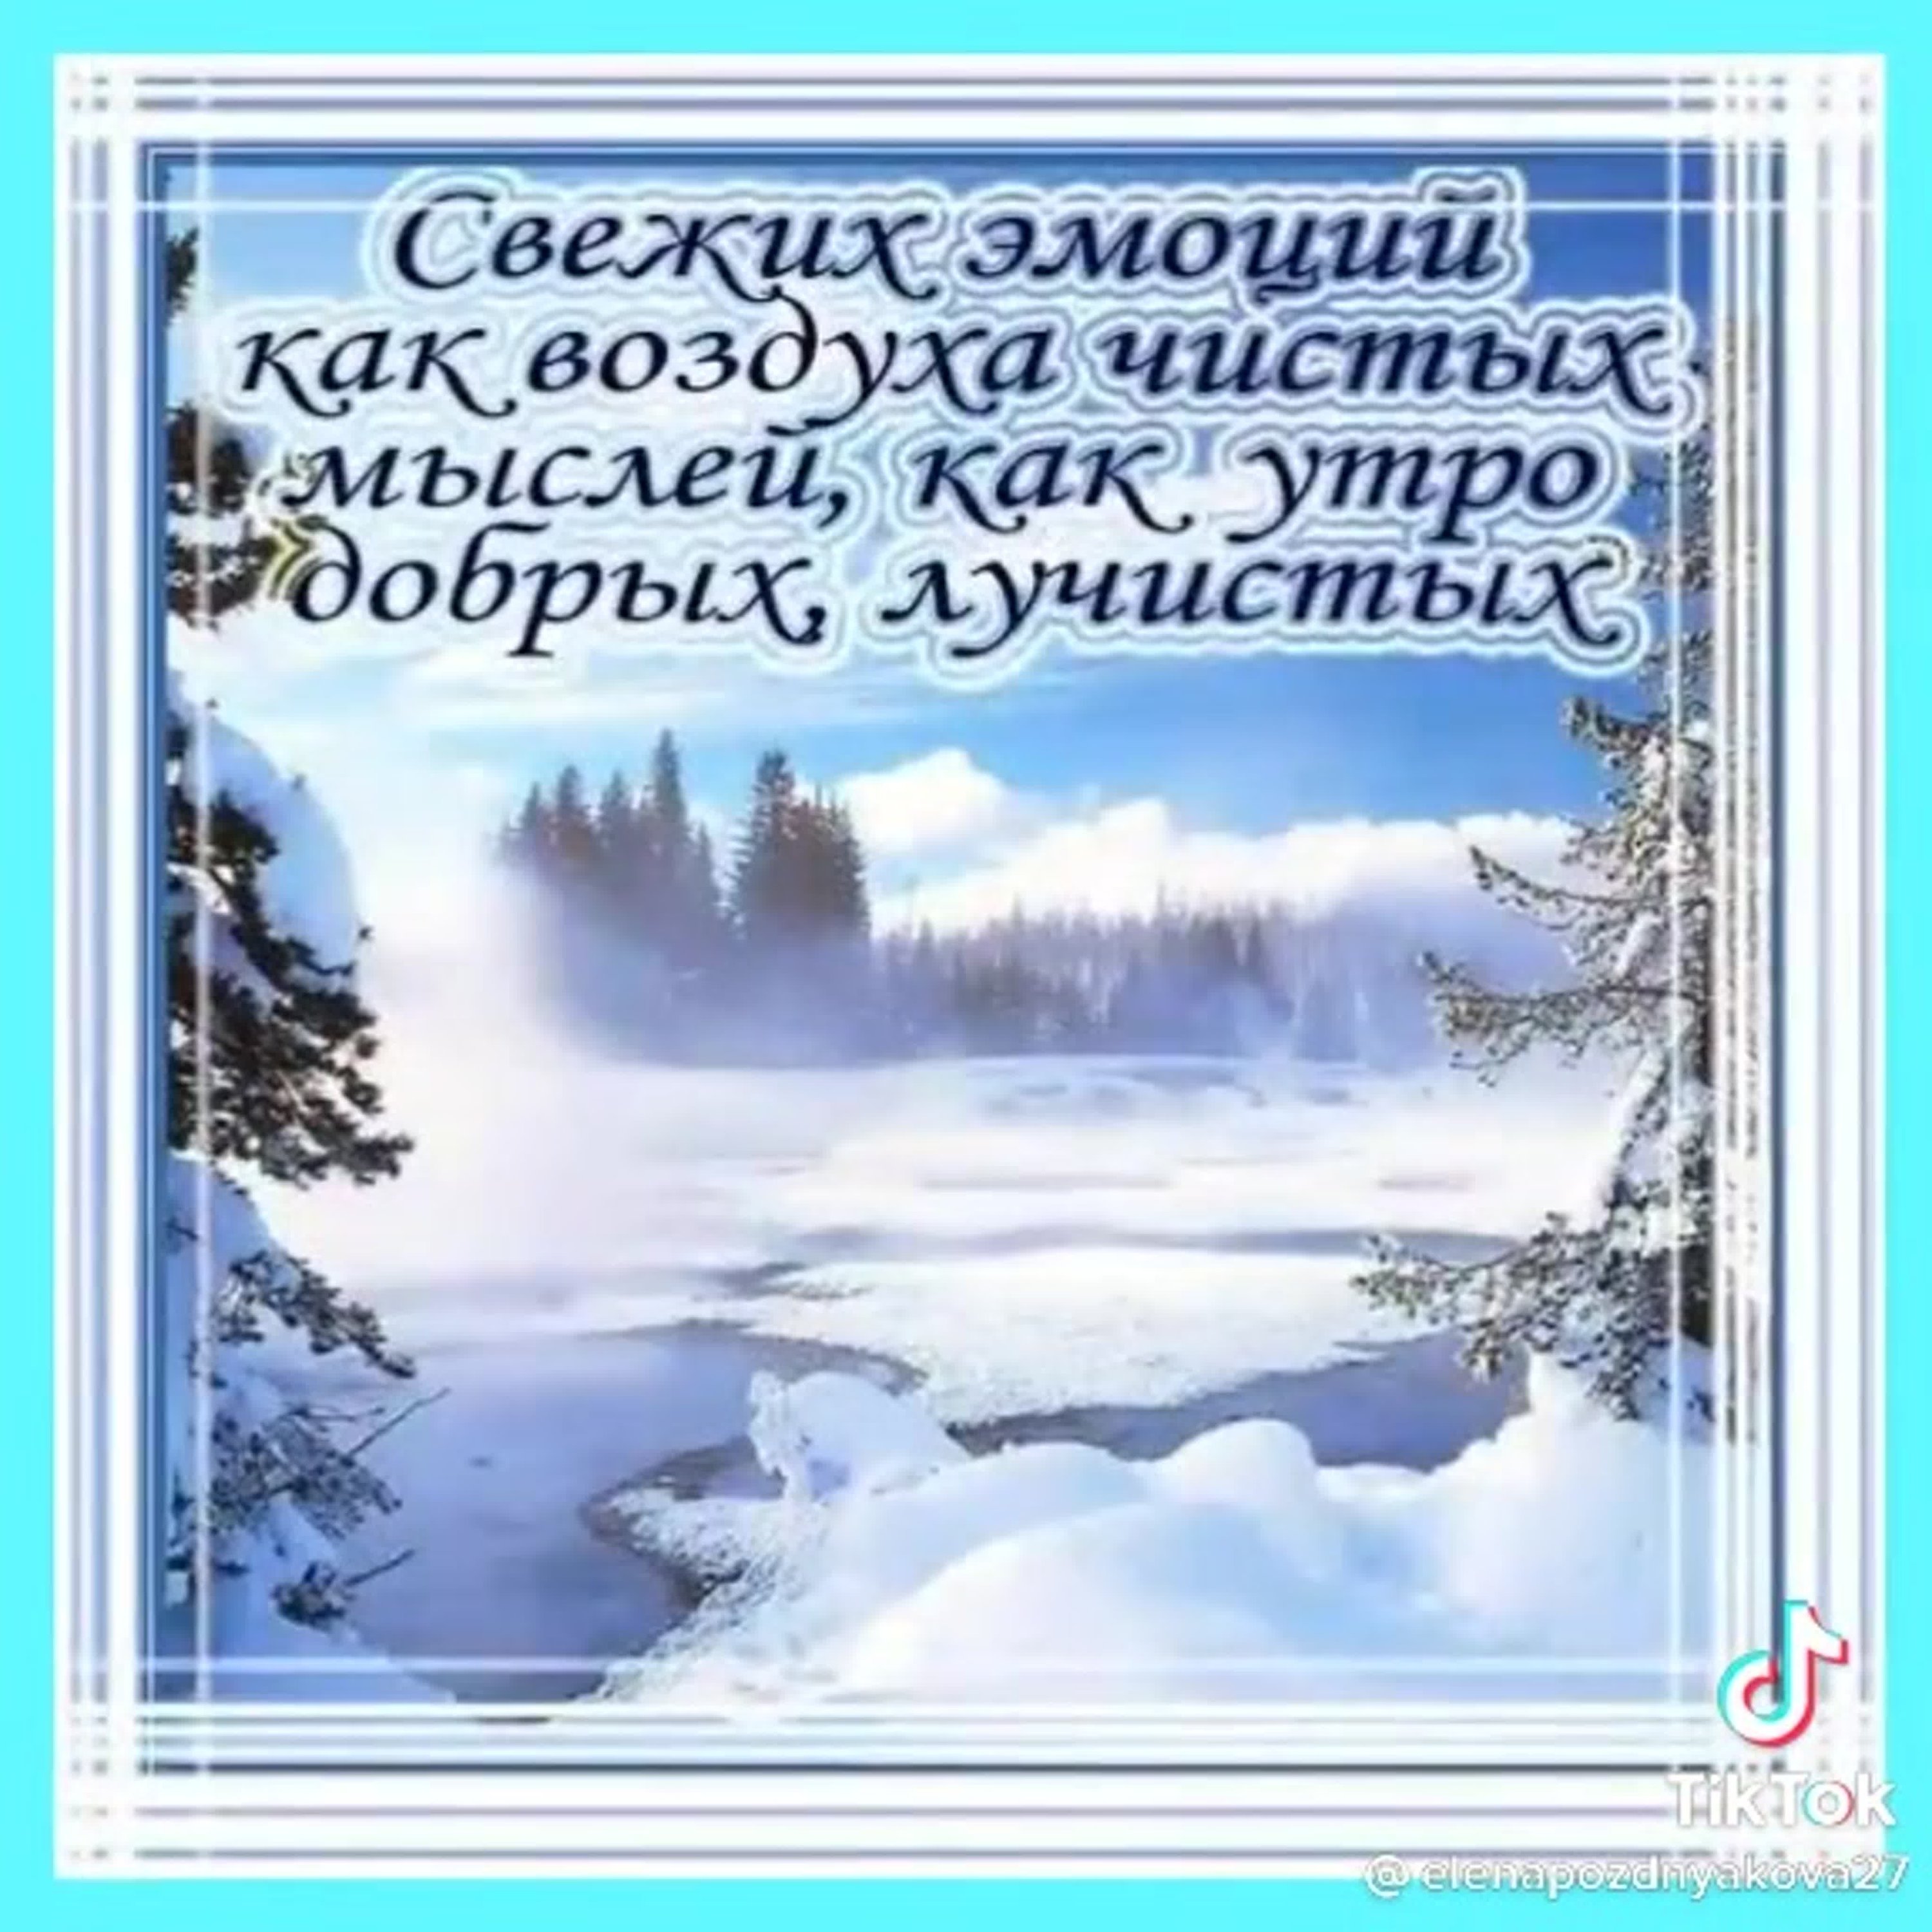 1663439028_12-mykaleidoscope-ru-p-otkritki-s-dobrim-moroznim-utrom-vkontakte-12.jpg